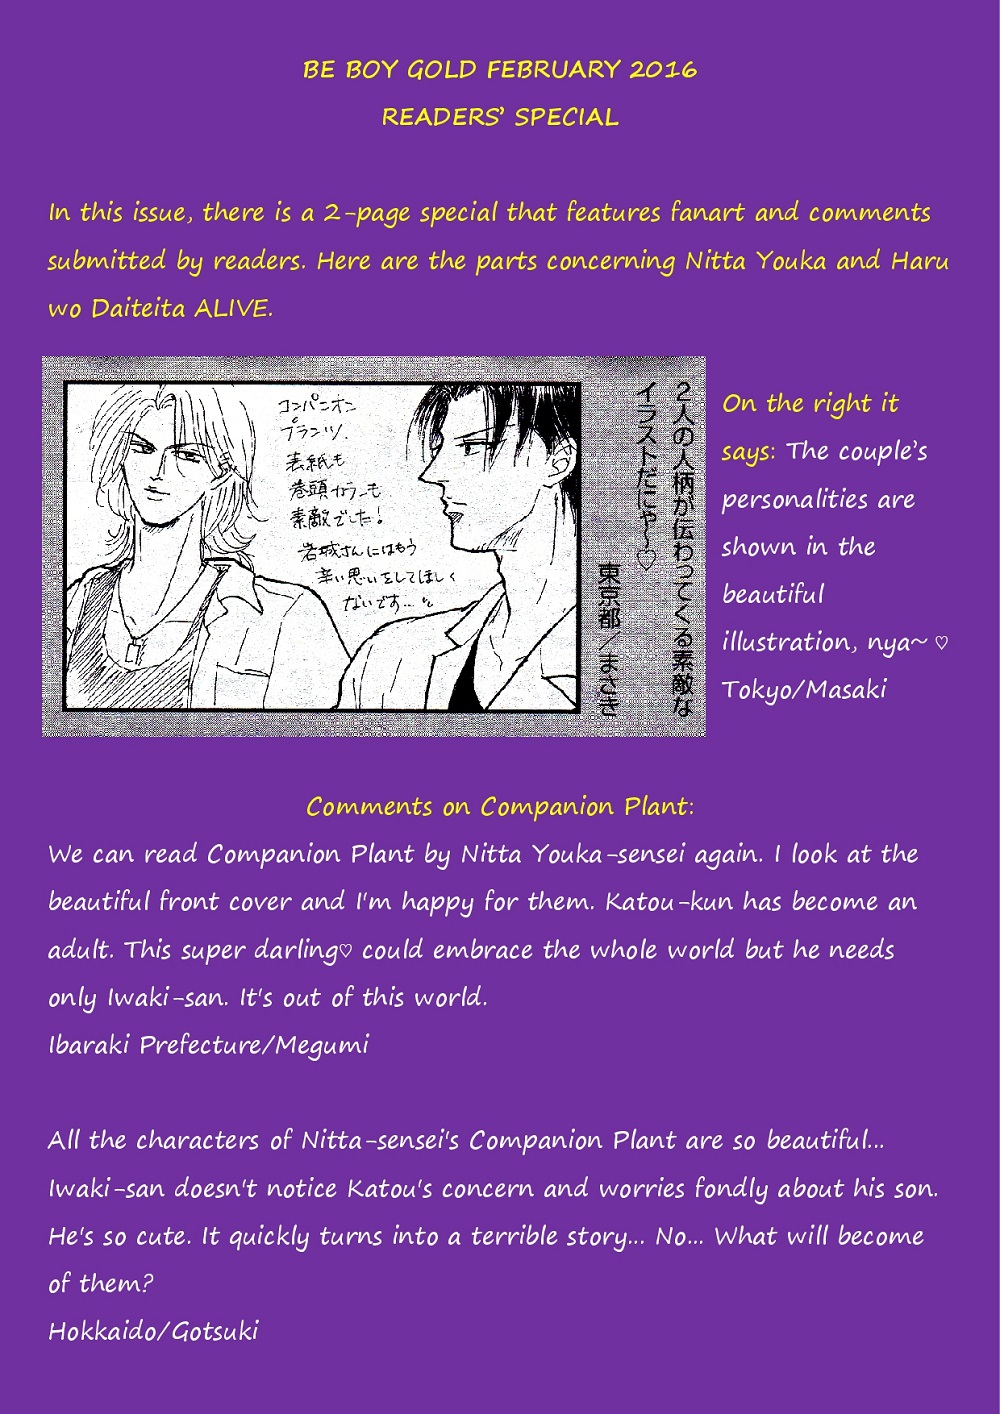 Haru O Daite Ita Alive Vol.3 Chapter 4: Companion Plant - Part 2 - Picture 2